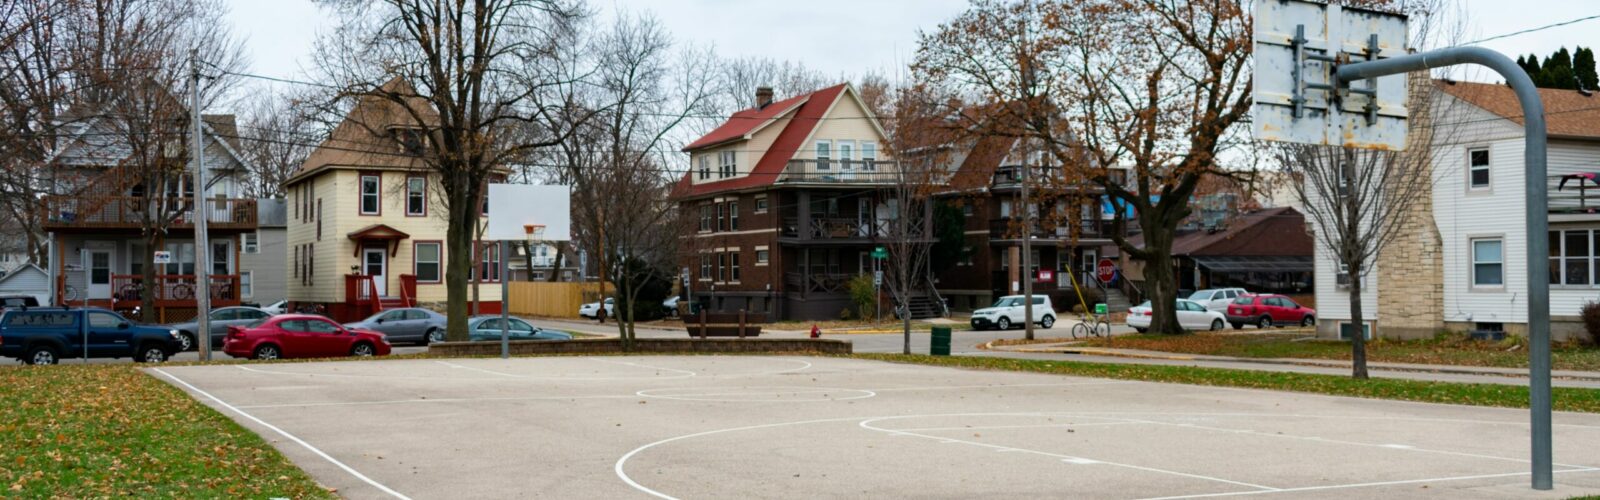 Basketball court in Milwaukee neighborhood.